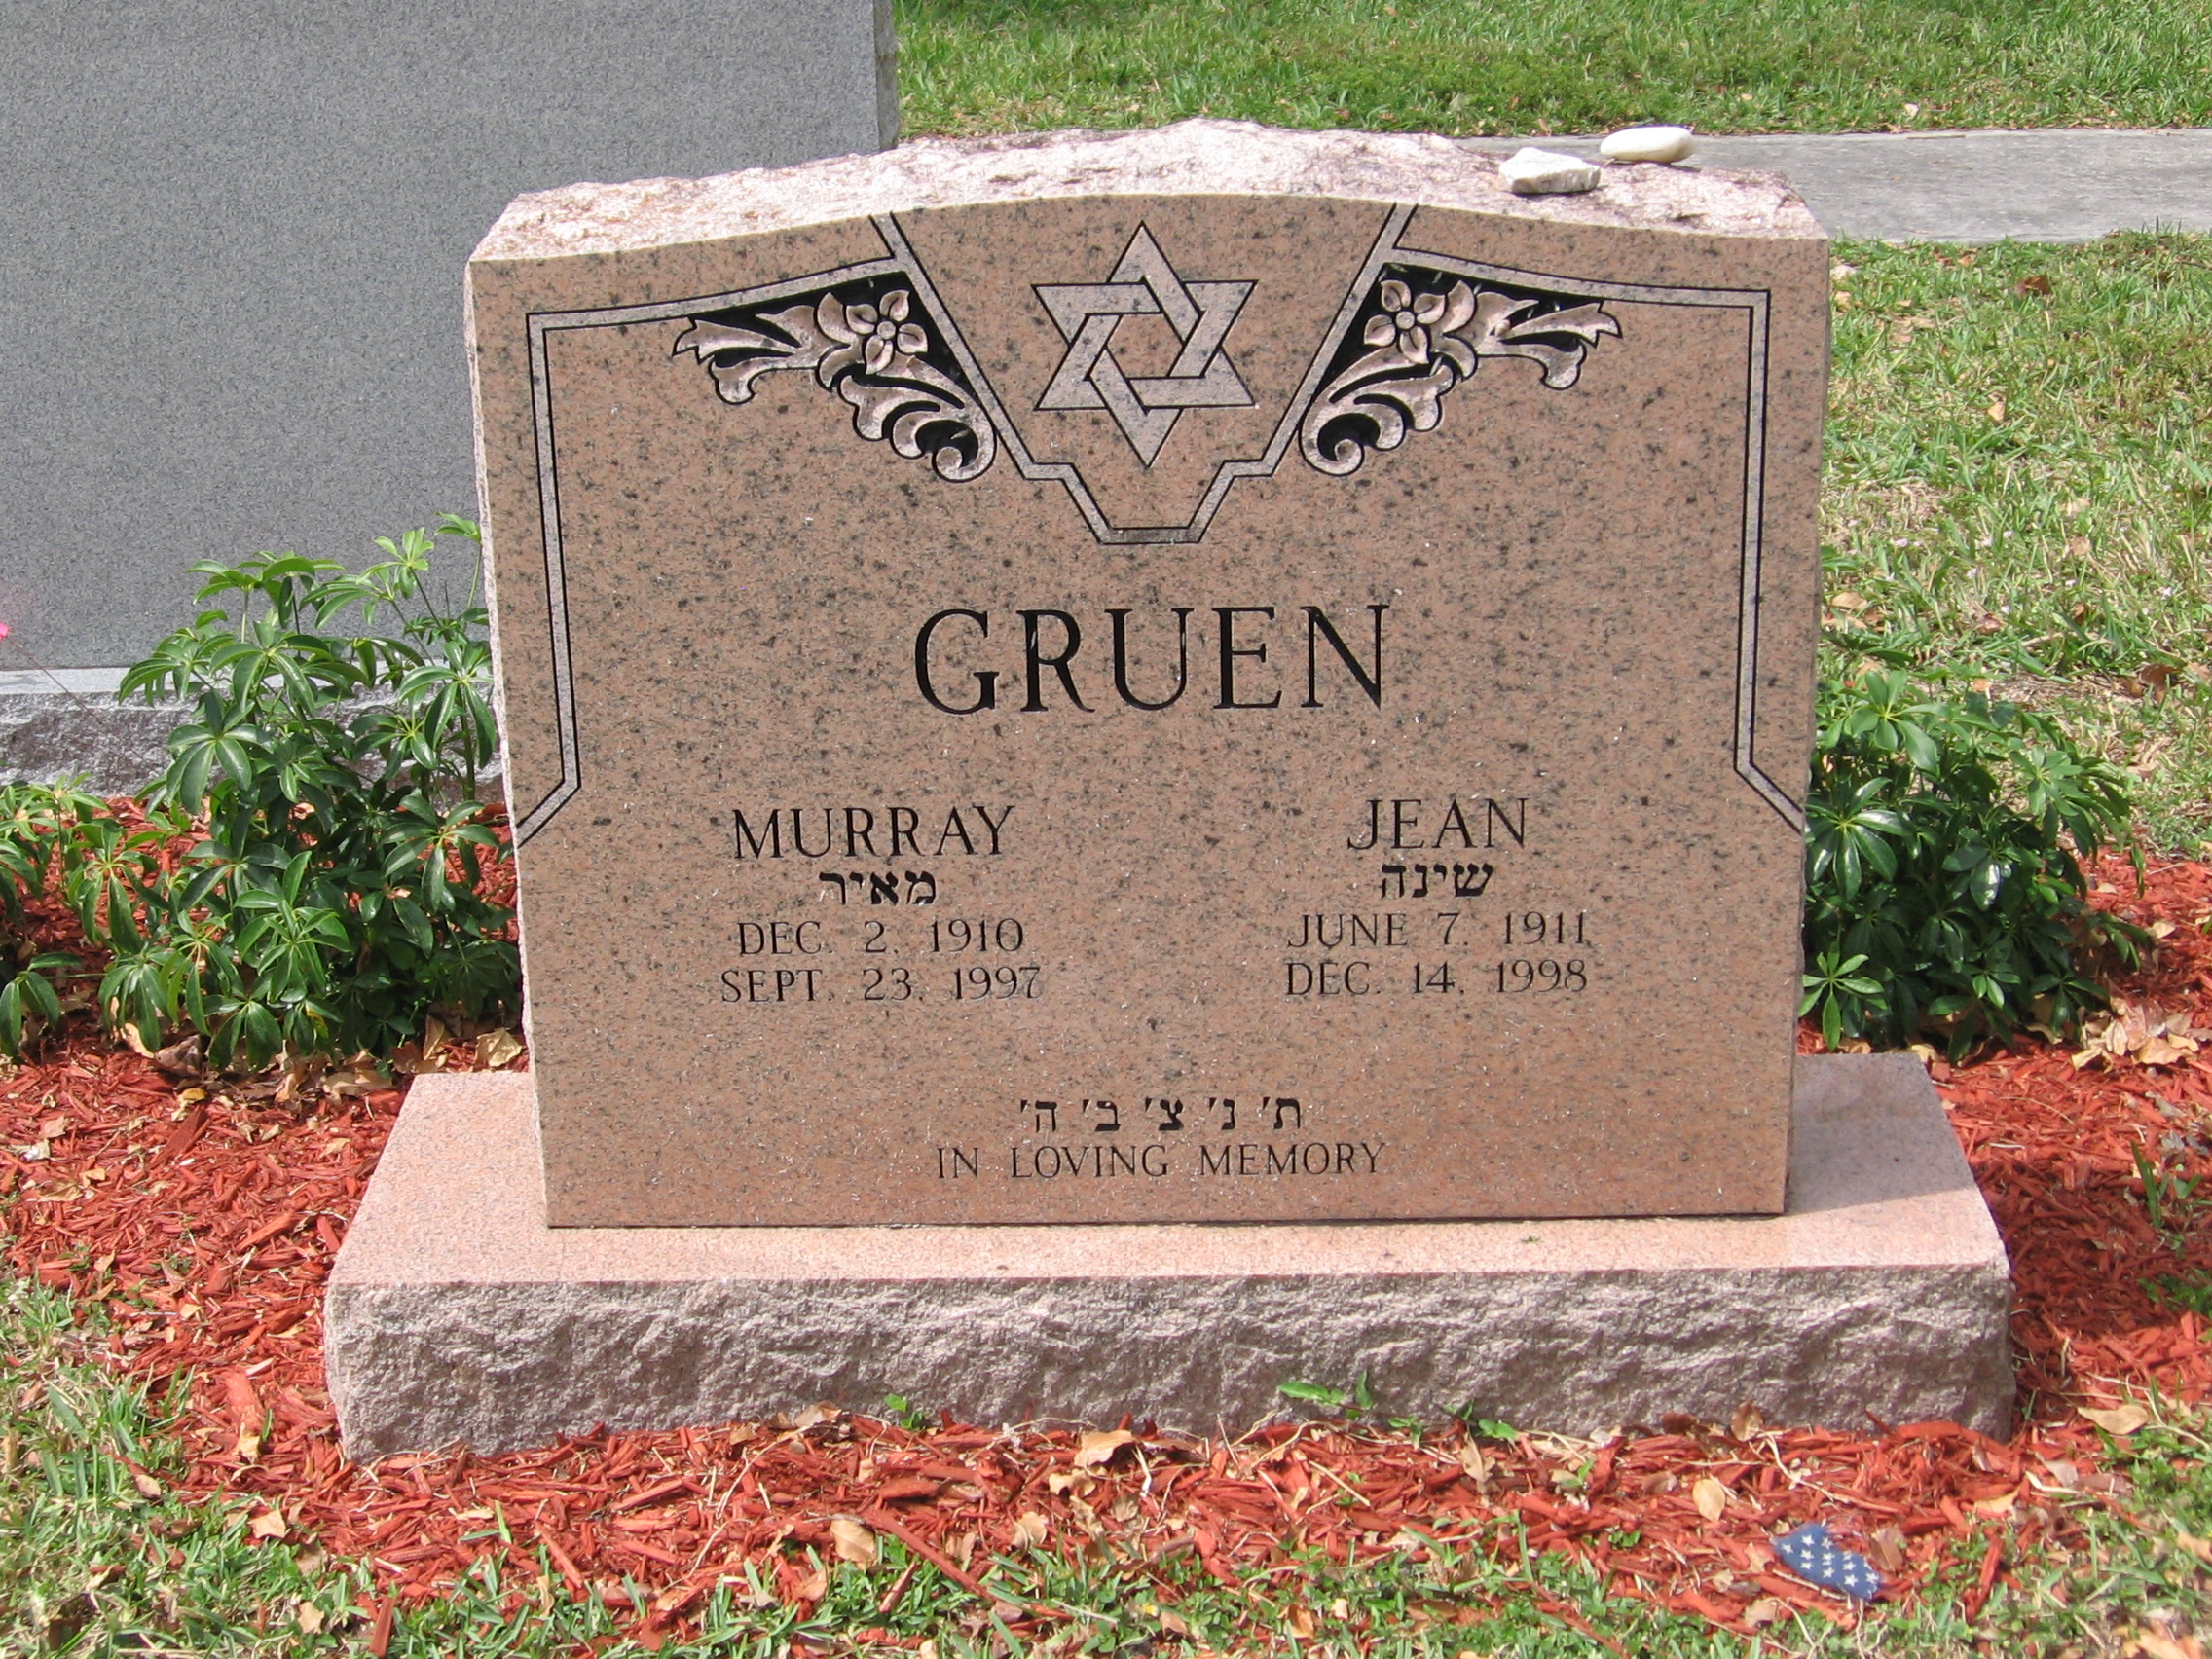 Murray Gruen